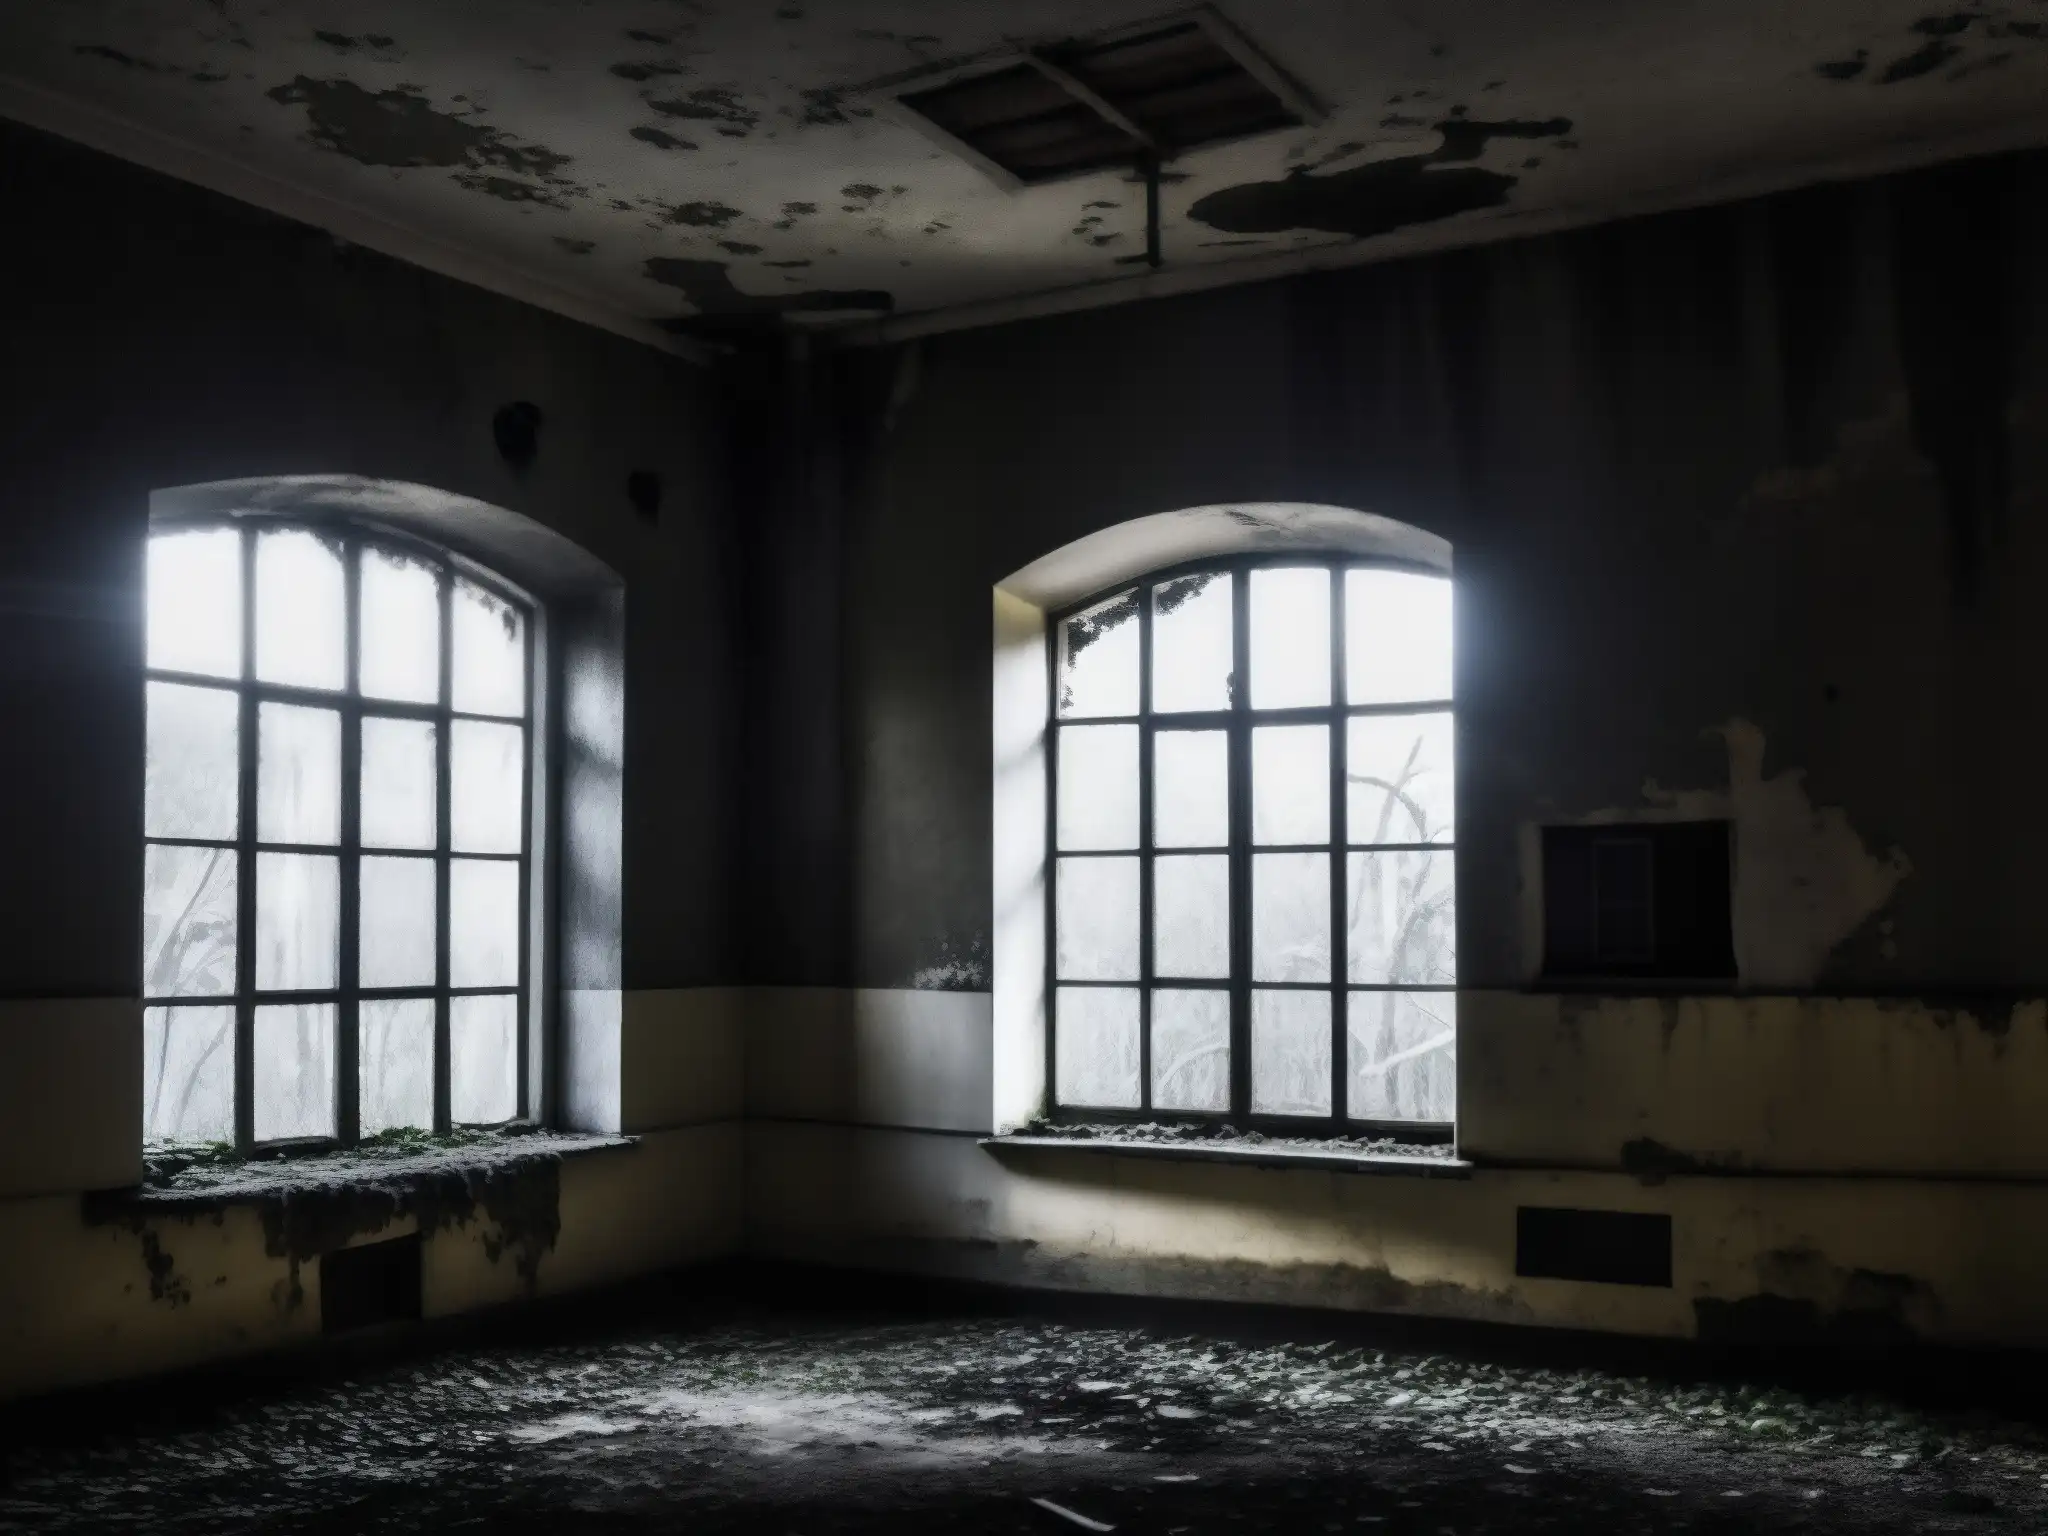 Imagen en blanco y negro de un antiguo hospital psiquiátrico abandonado, con enredaderas, ventanas rotas y sombras inquietantes